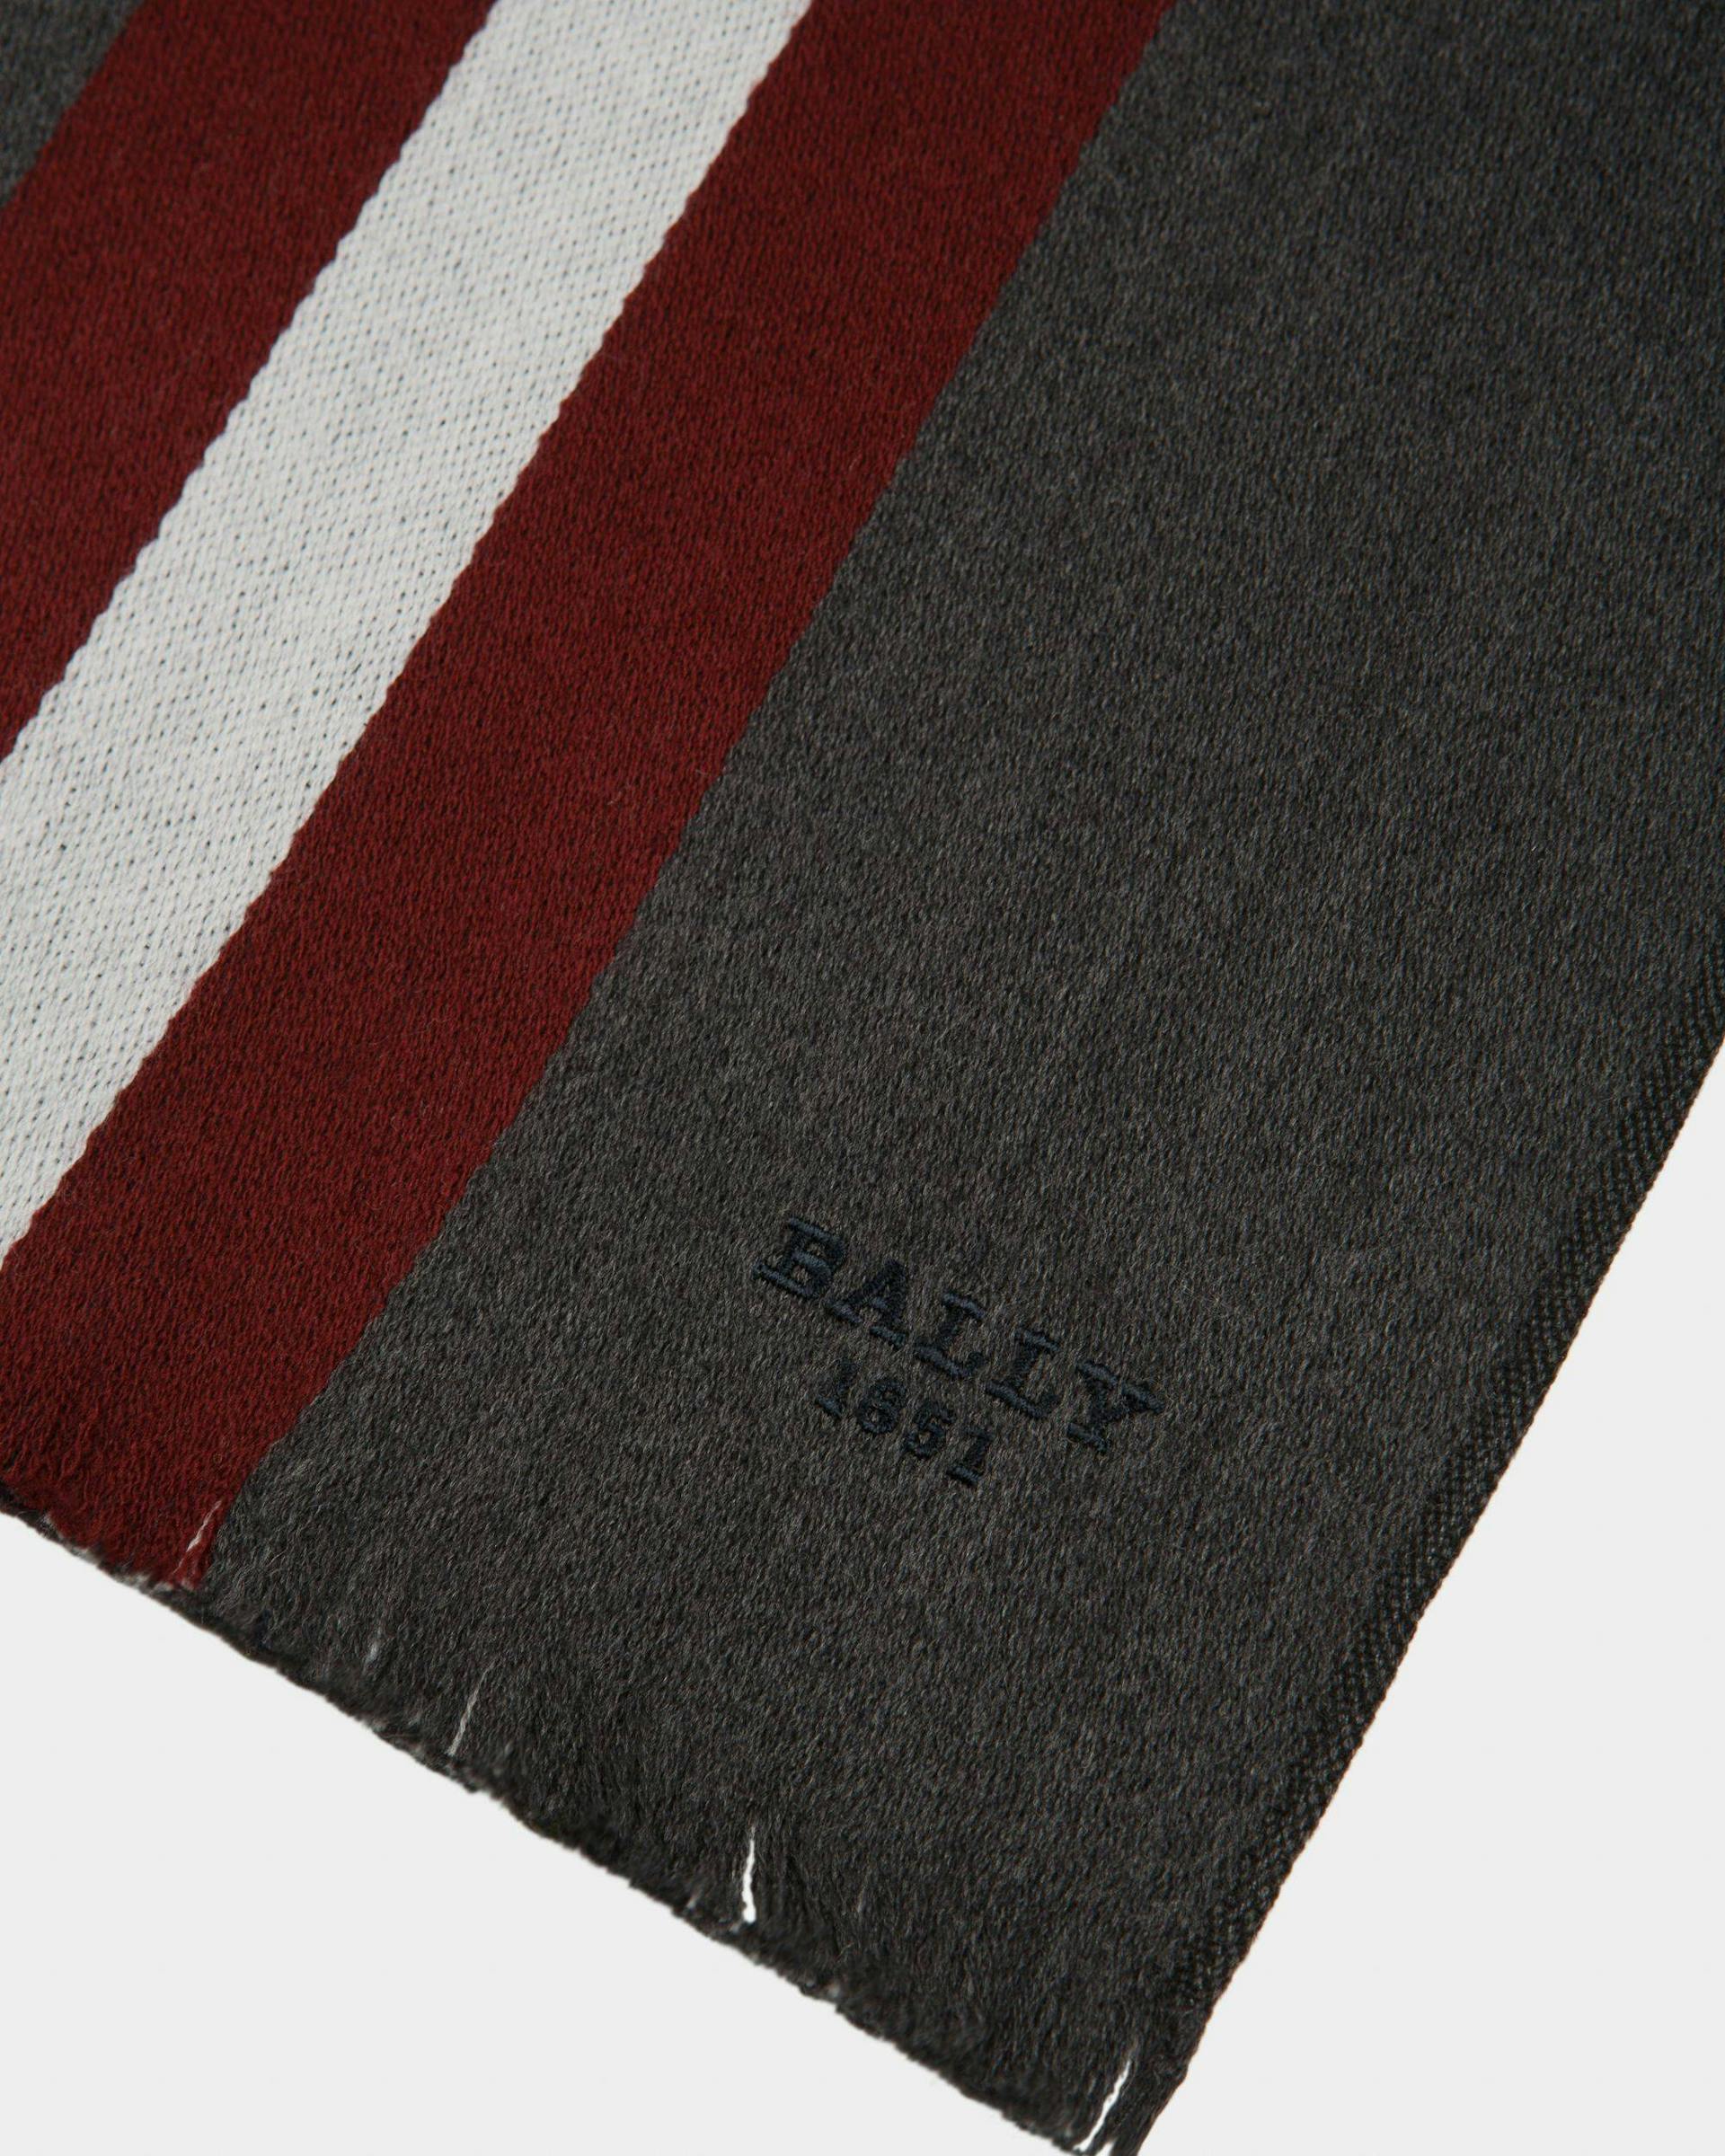 Bally Stripe Chevron Scarf - Men's - Bally - 02